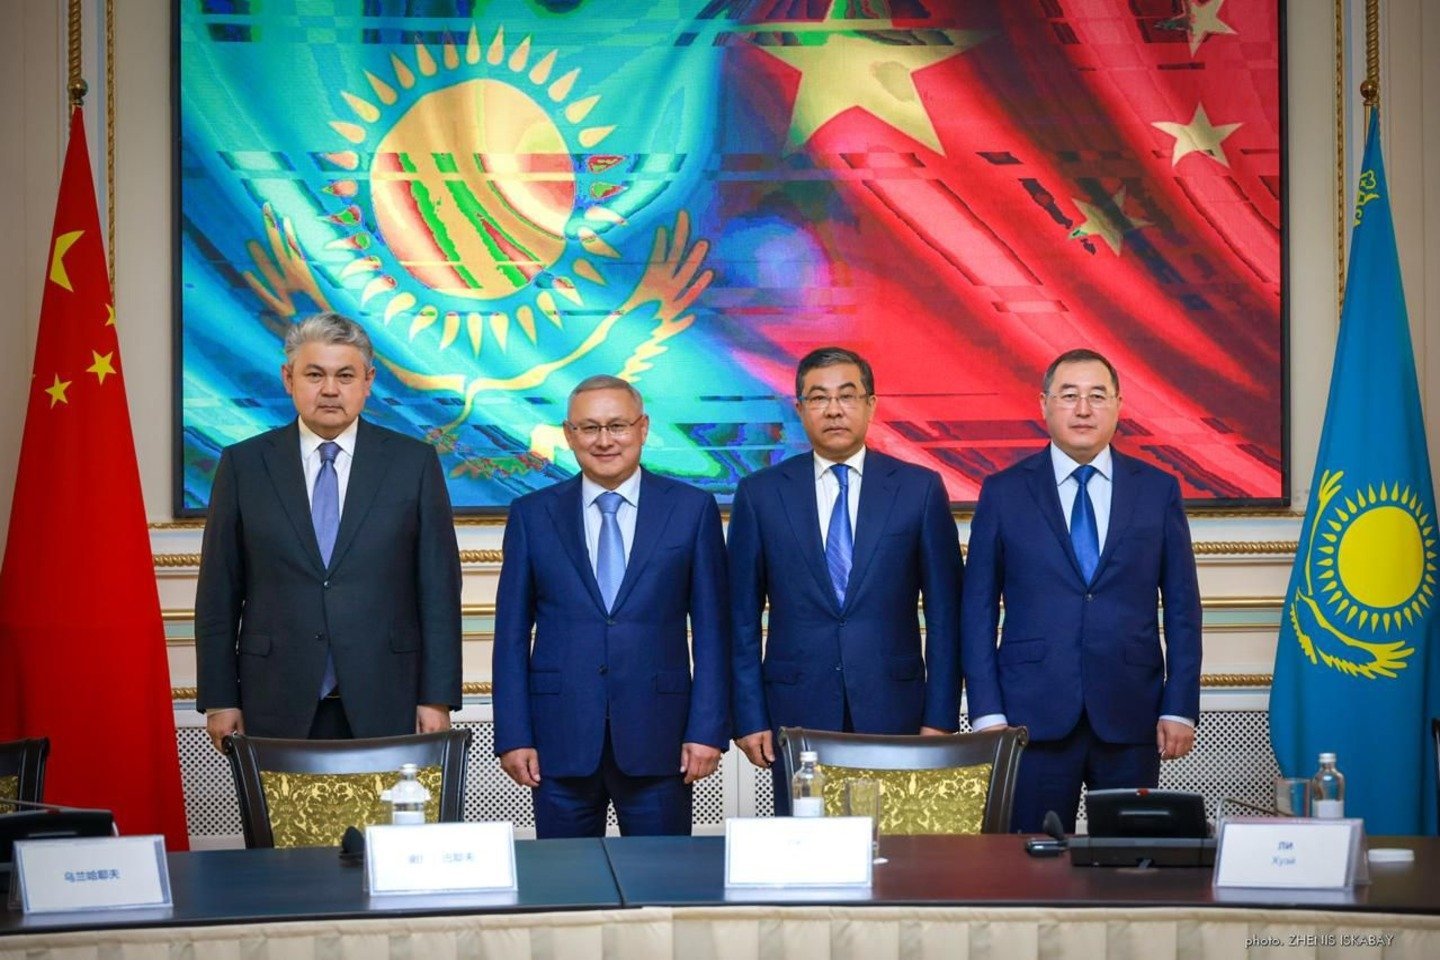 Новости Казахстана / Экономика в Казахстане / Кредиты в ВКО станут доступнее, а депозиты не такими выгодными - эксперт 